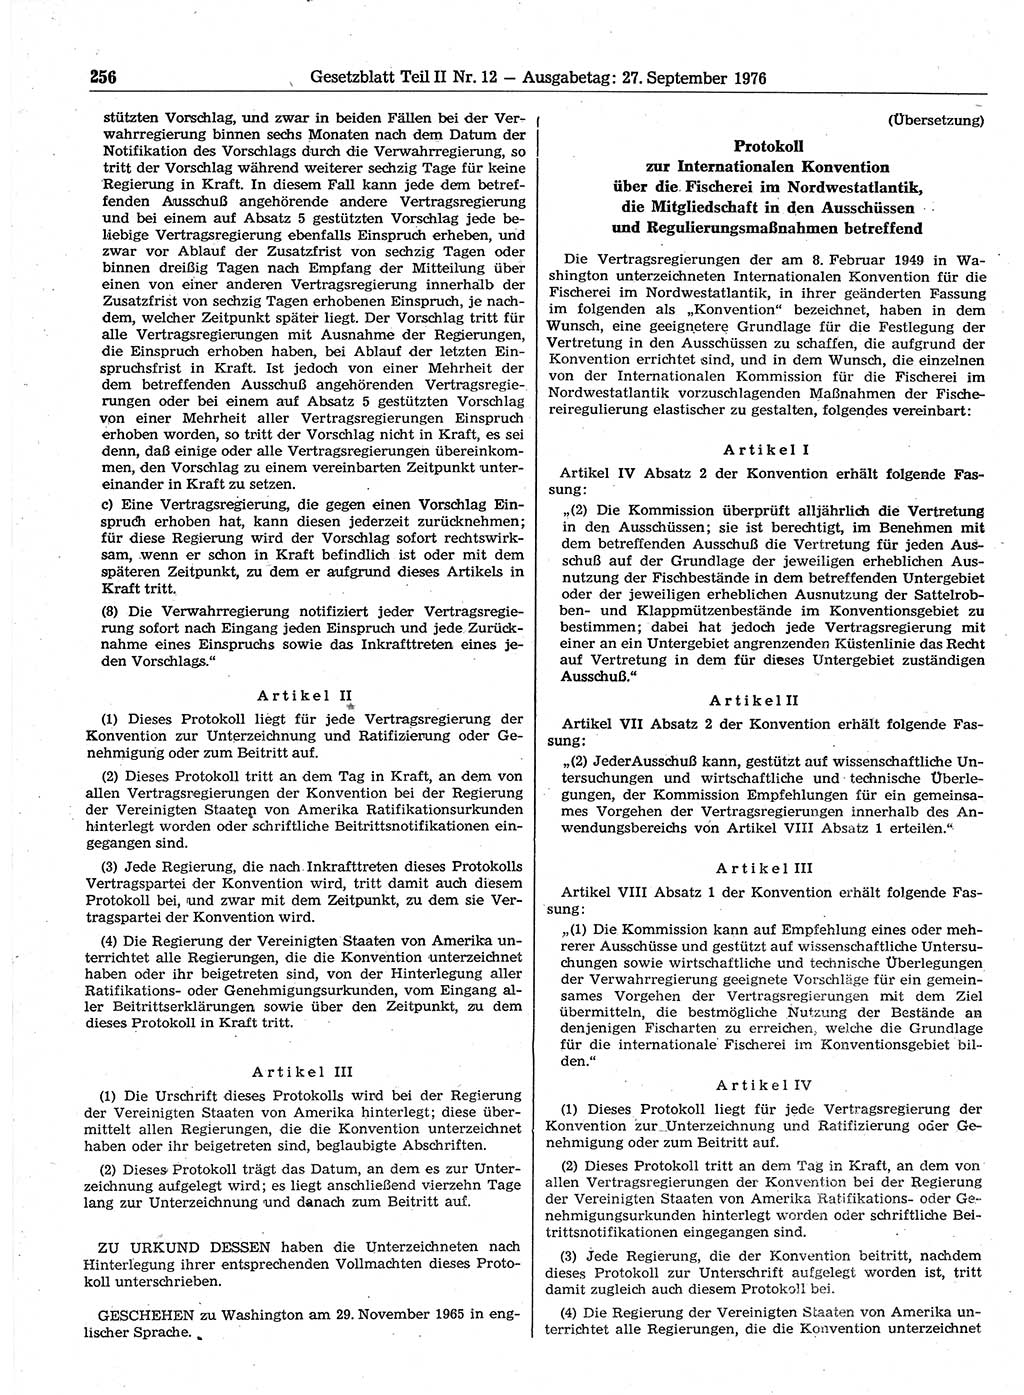 Gesetzblatt (GBl.) der Deutschen Demokratischen Republik (DDR) Teil ⅠⅠ 1976, Seite 256 (GBl. DDR ⅠⅠ 1976, S. 256)